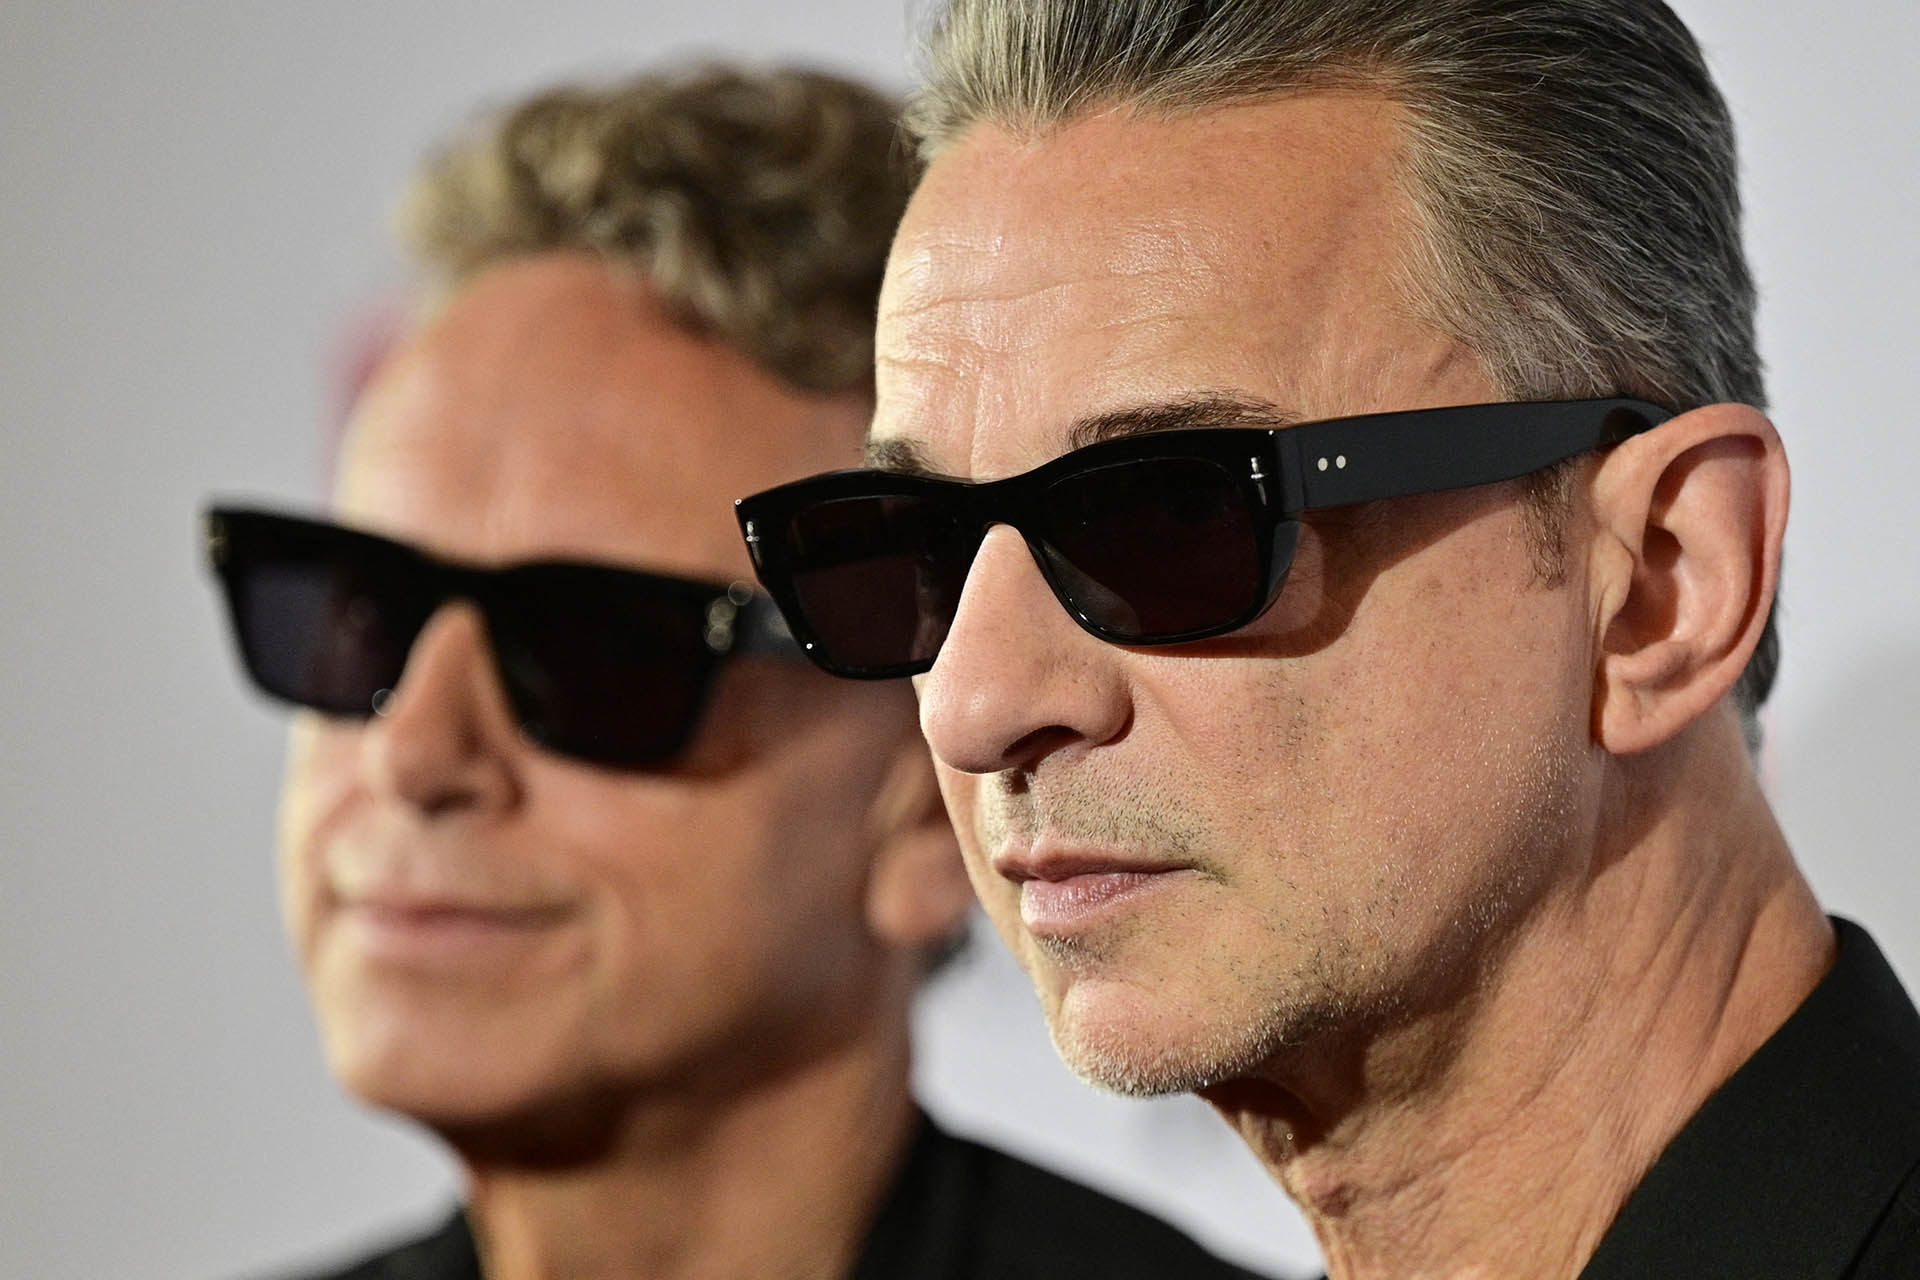 Martin Gore y Dave Gahan, los inconfundibles sonidos electrónicos de Depeche Mode envolverán el Kaseya Center en una noche de magia y emociones intensas. (Foto John MACDOUGALL / AFP)